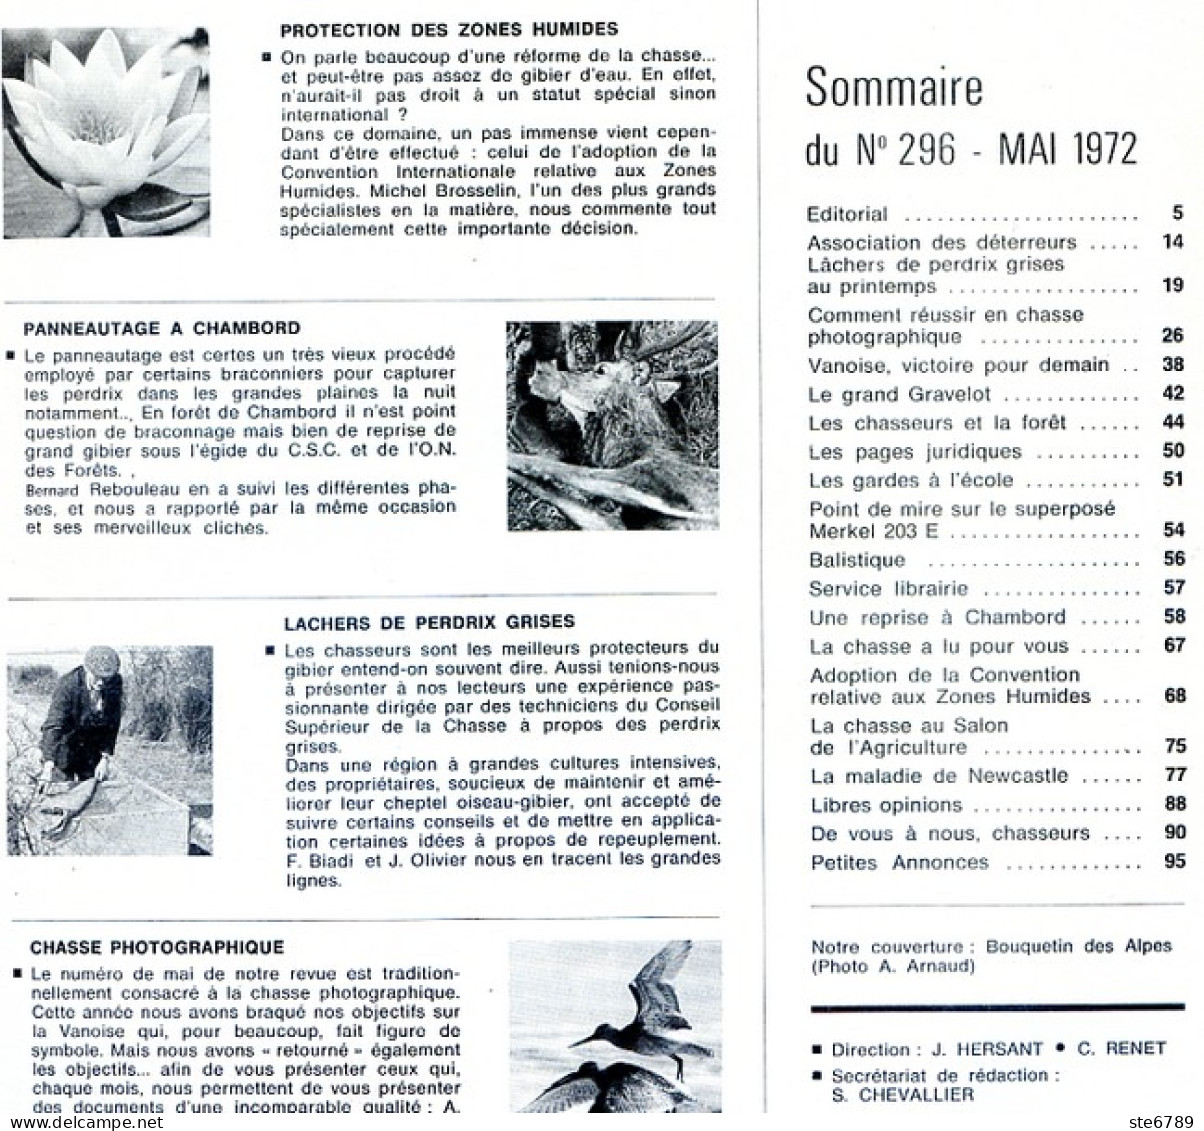 La Revue Nationale De LA CHASSE N° 296 Mai 1972 Panneautage à Chambord , Lachers Perdrix Grises , Chasse Photographique - Caza & Pezca